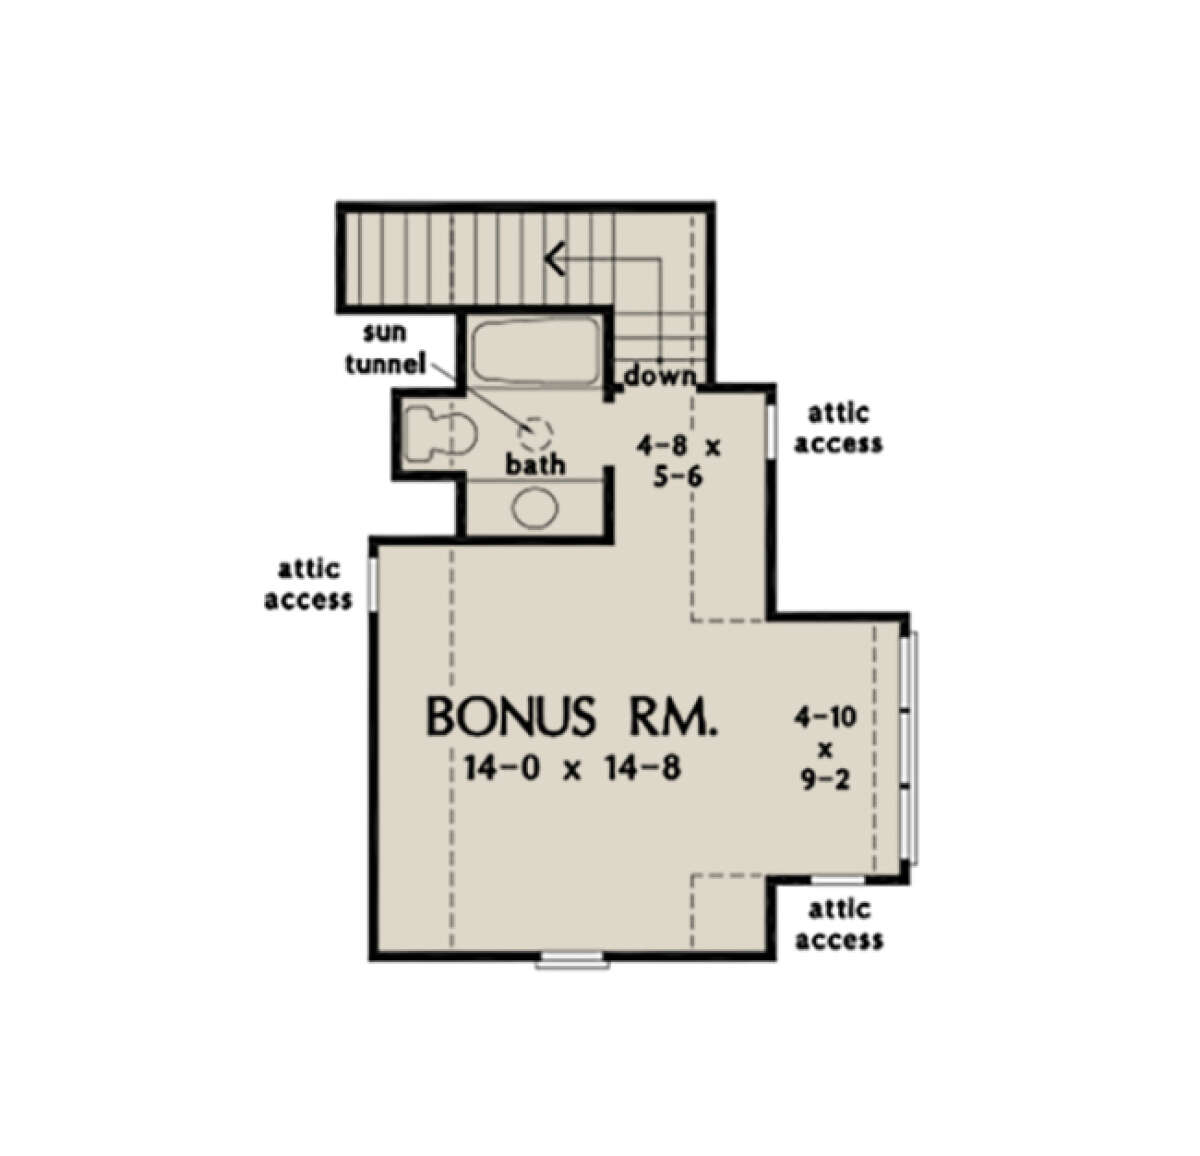 Bonus Room for House Plan #2865-00113